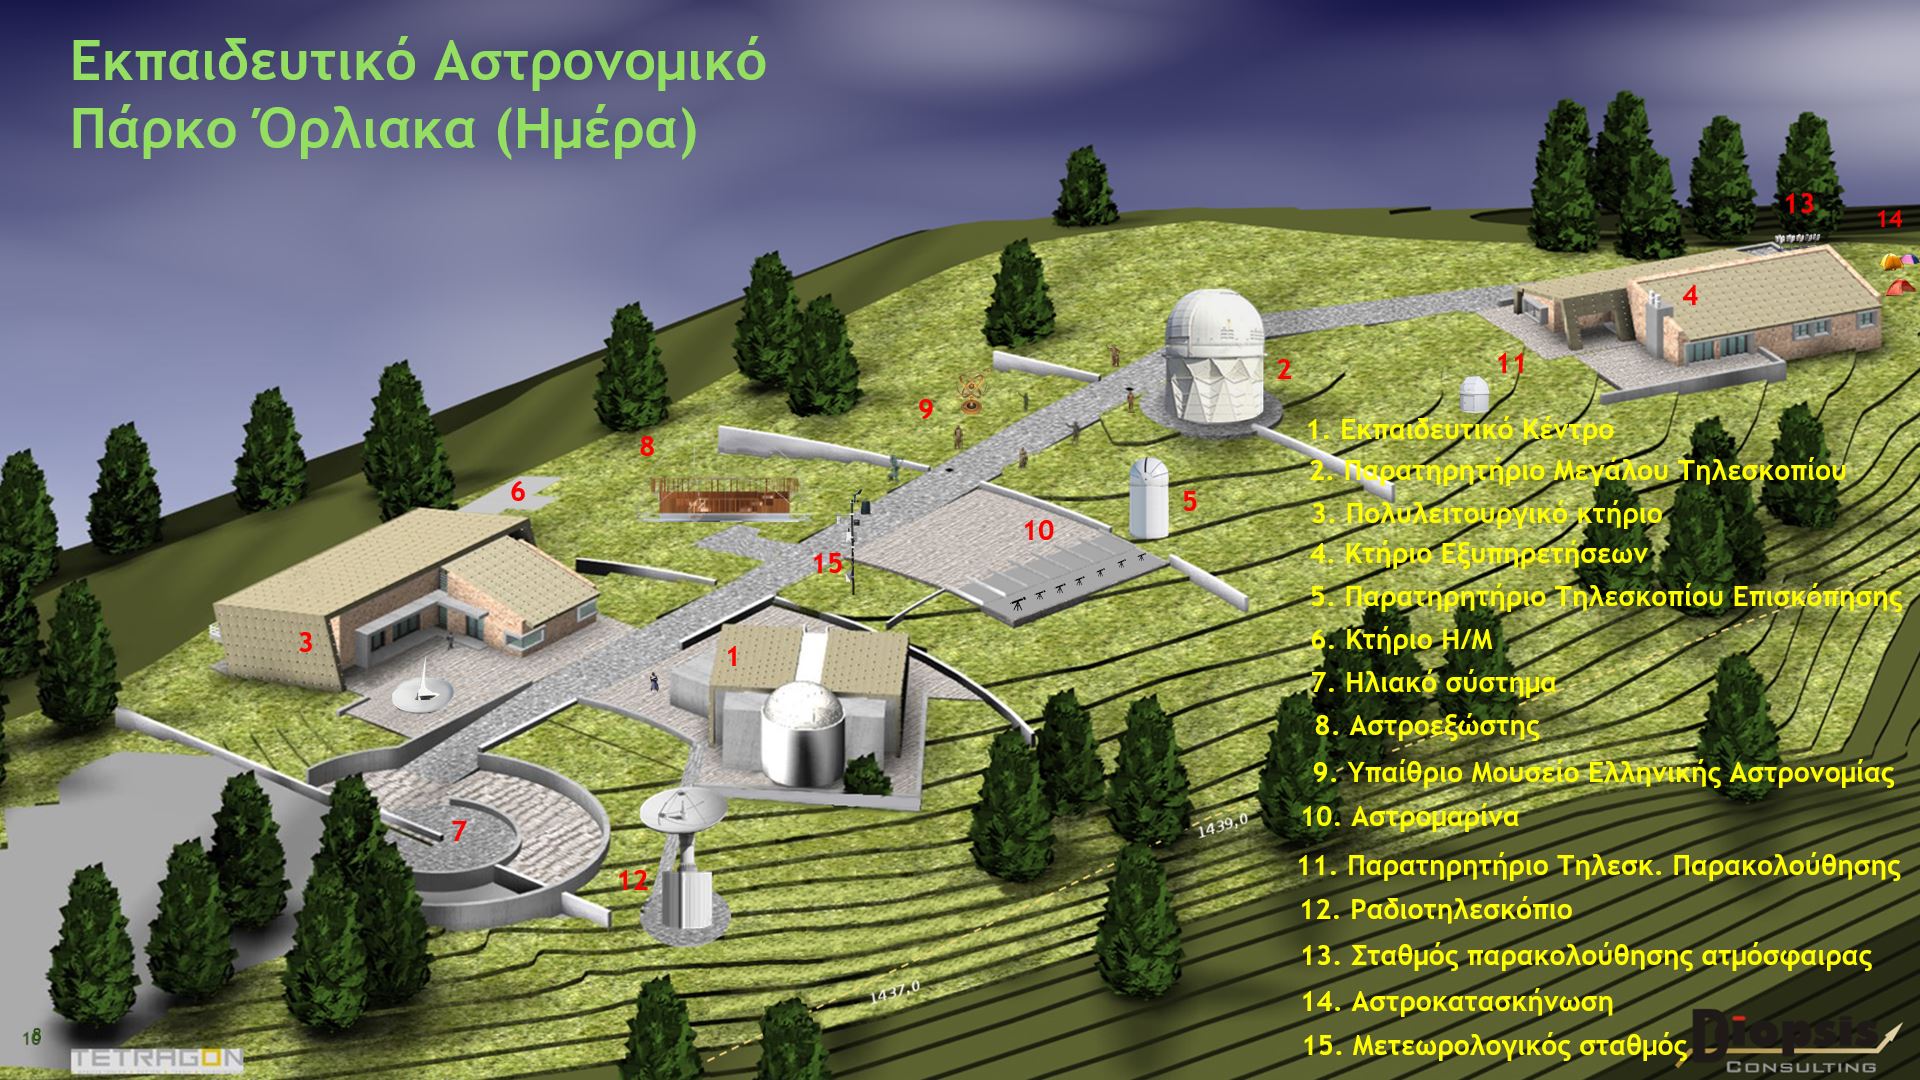 Εκπαιδευτικό αστρονομικό πάρκο Όρλιακα… με βεβαιότητα πια *Του Γιώργου Νούτσου